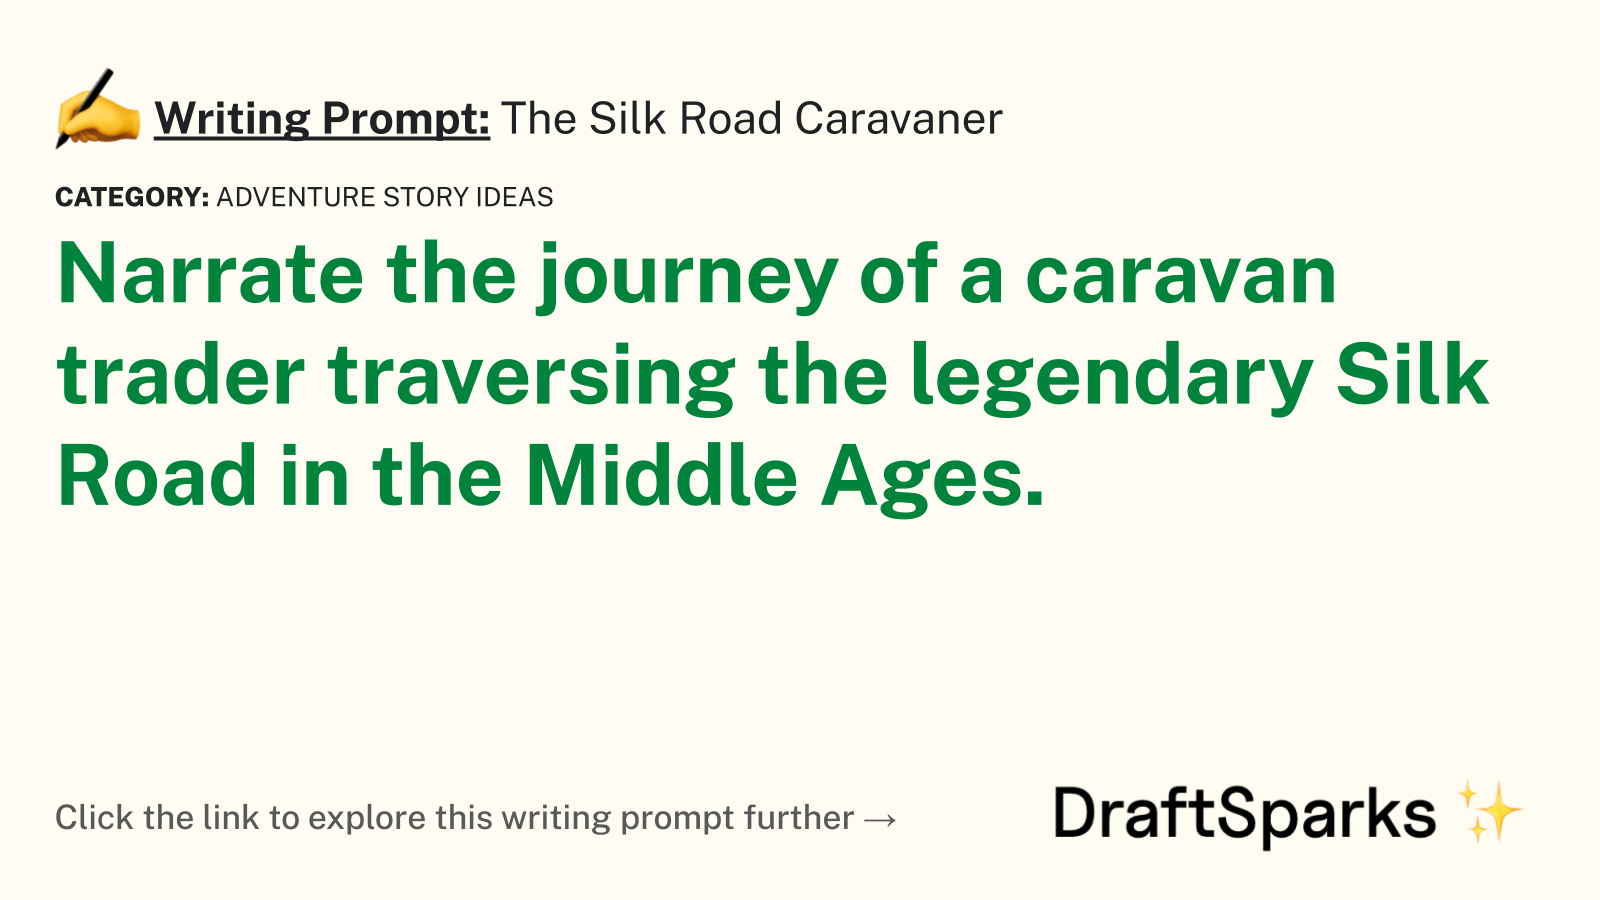 The Silk Road Caravaner